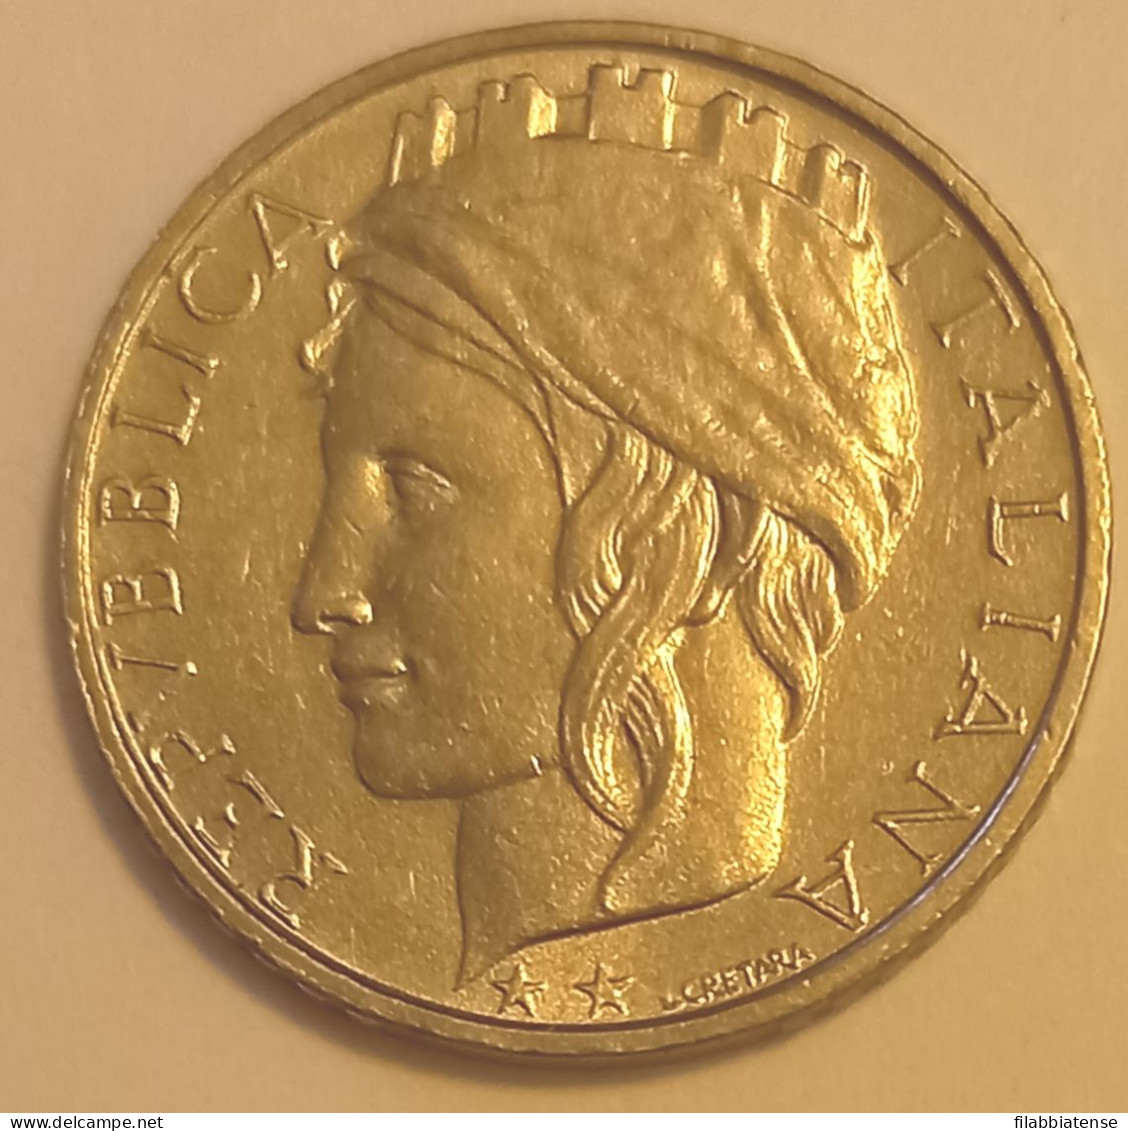 1998 - Italia 100 Lire    ------ - 100 Liras